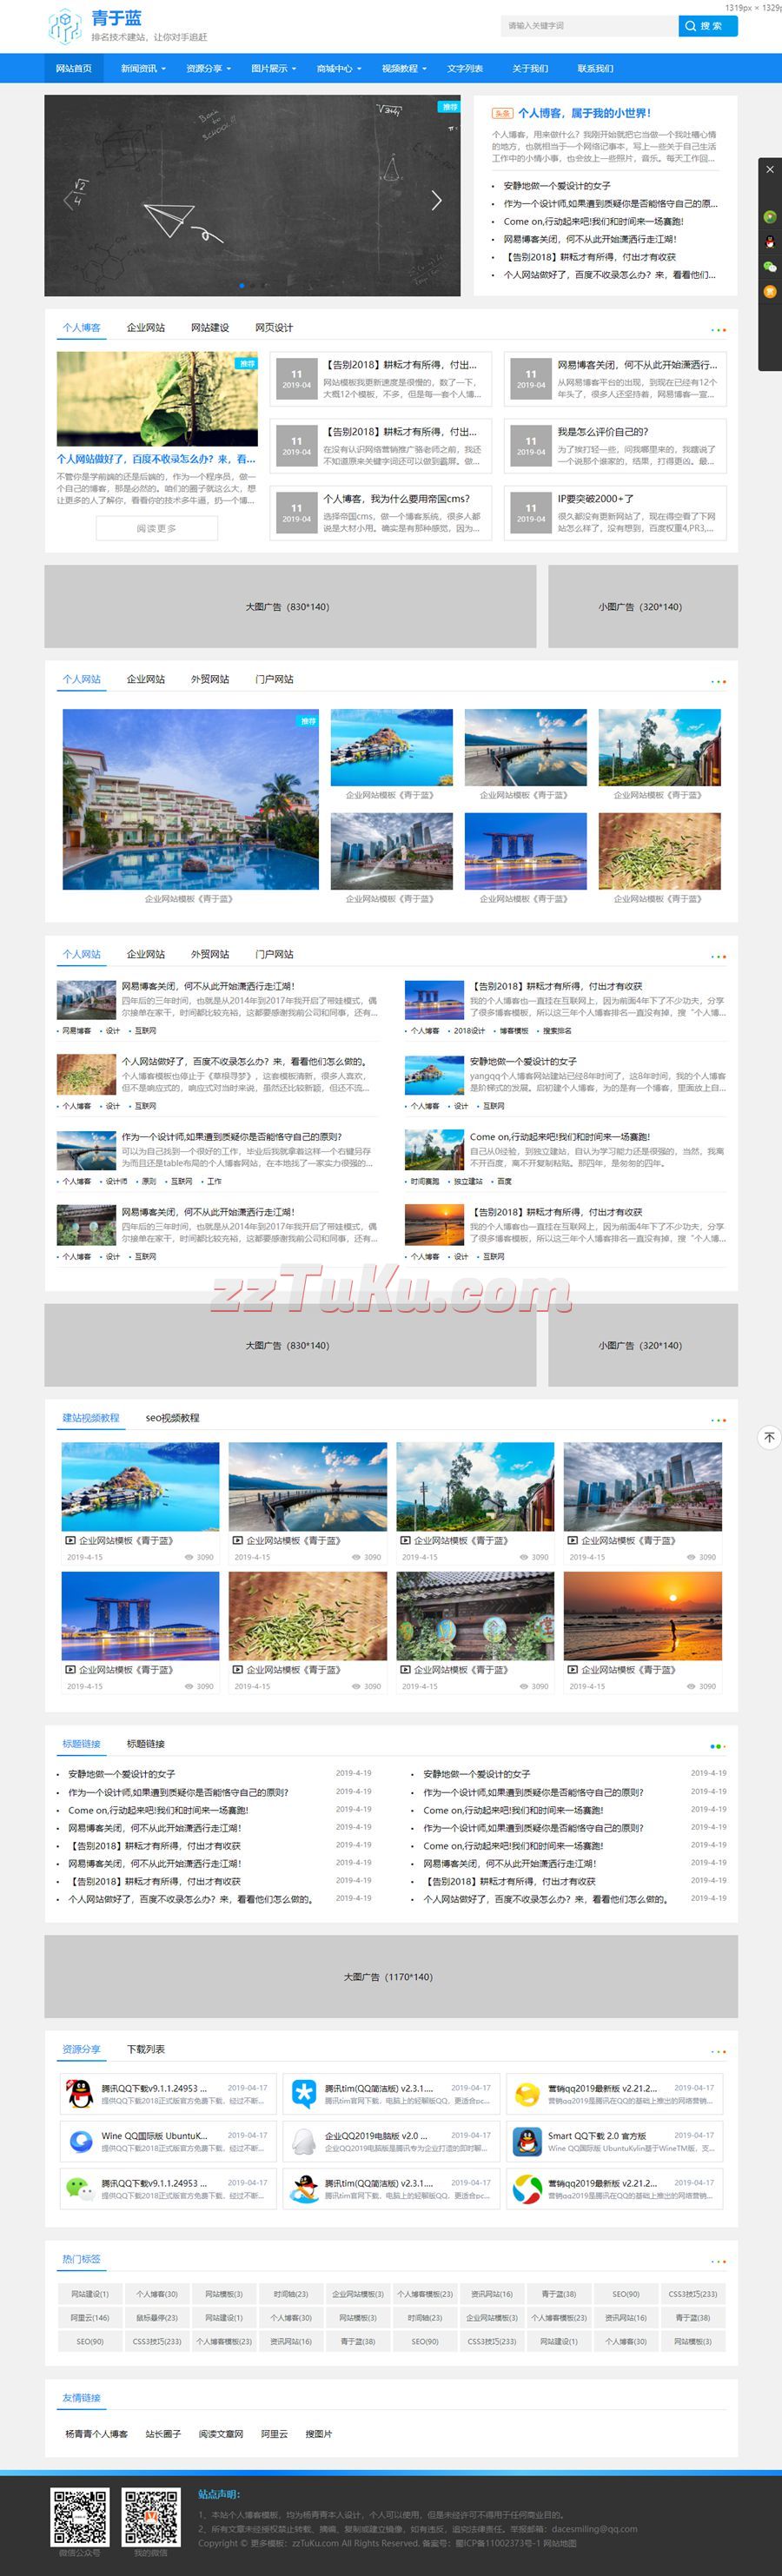 SEO网站建设技术博客网站模板